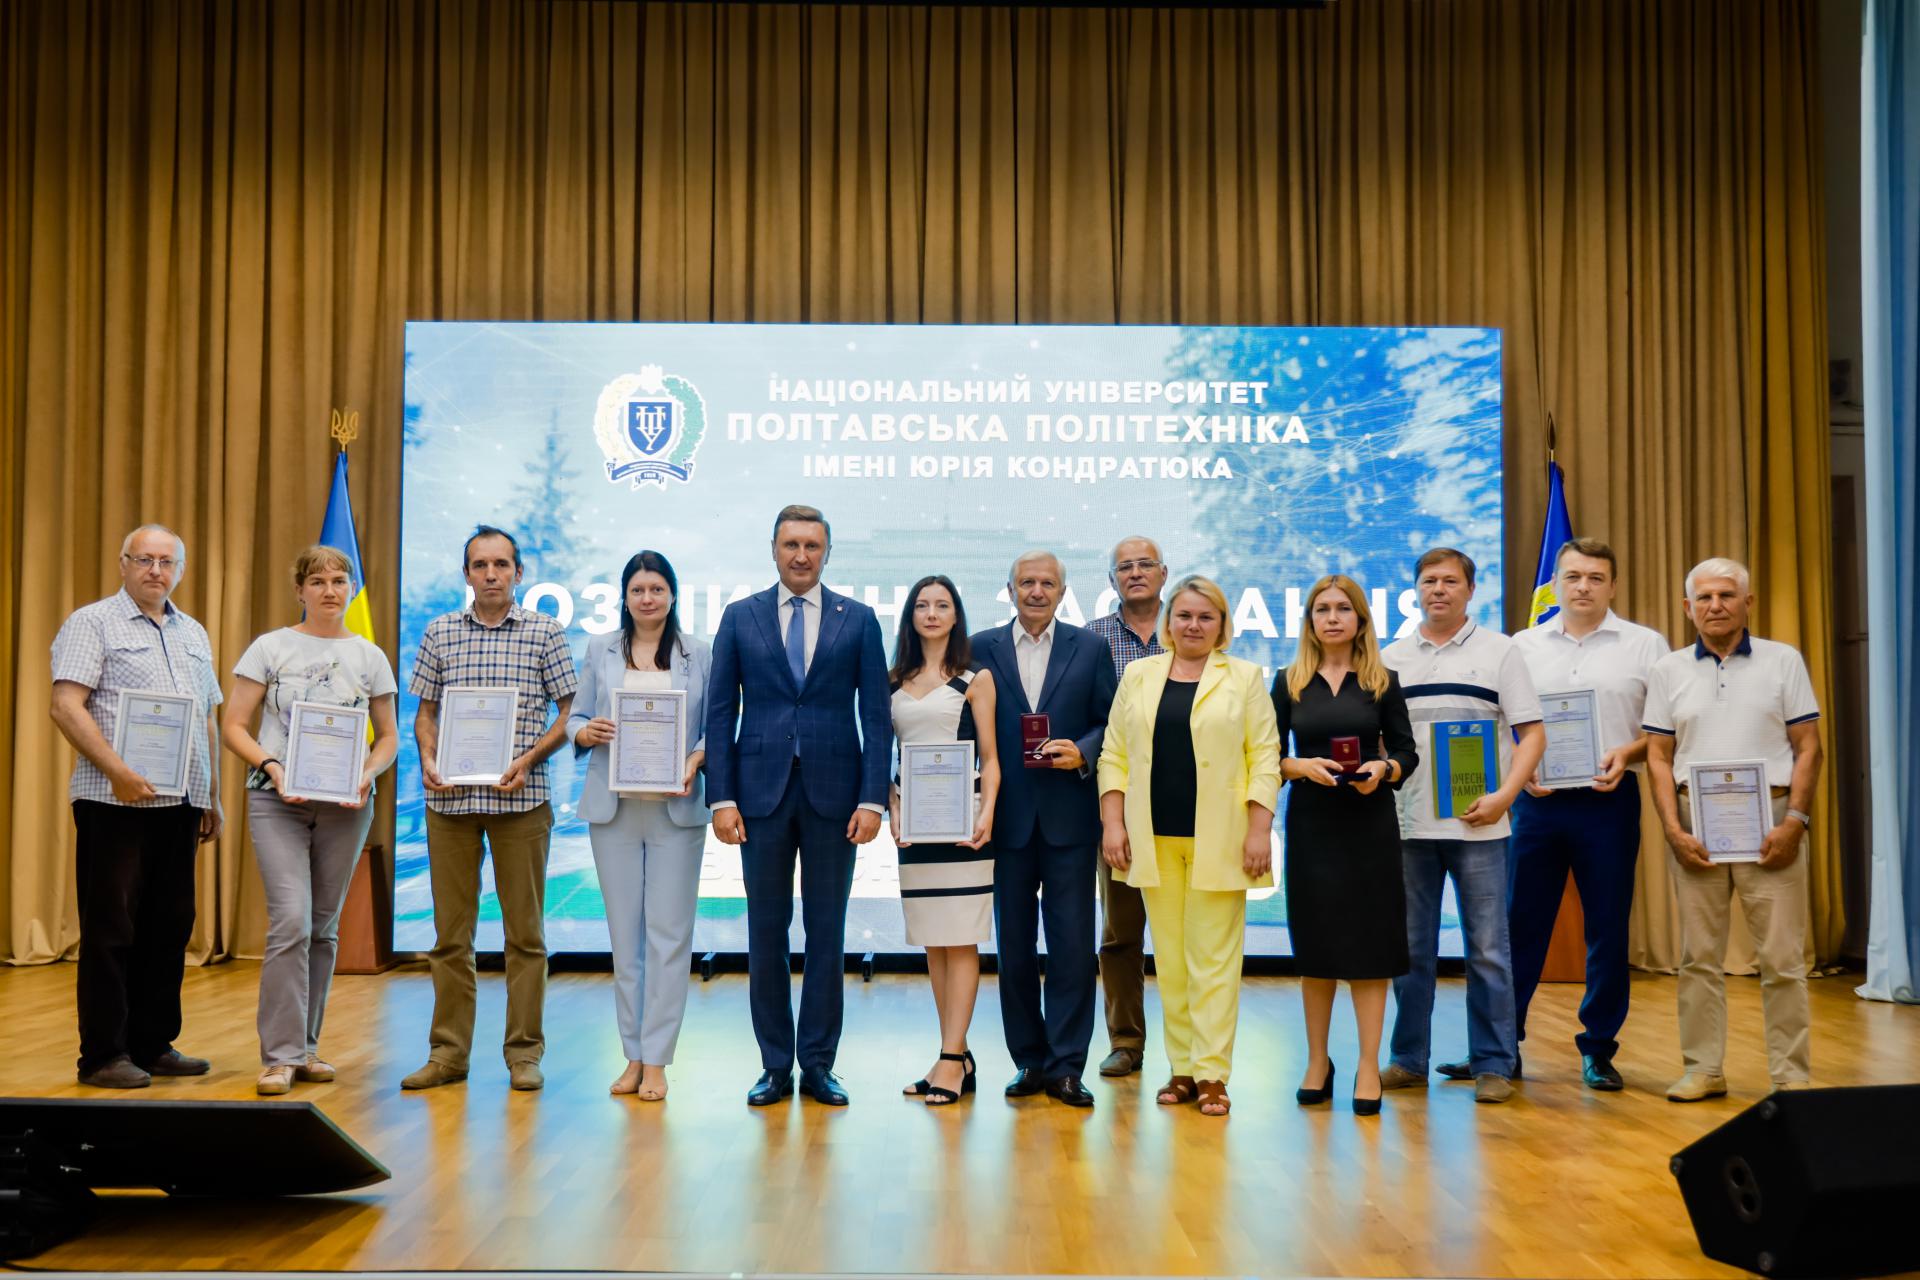 Шістнадцять співробітників університету та коледжу нафти і газу нагороджені відзнаками Міністерства освіти і науки України